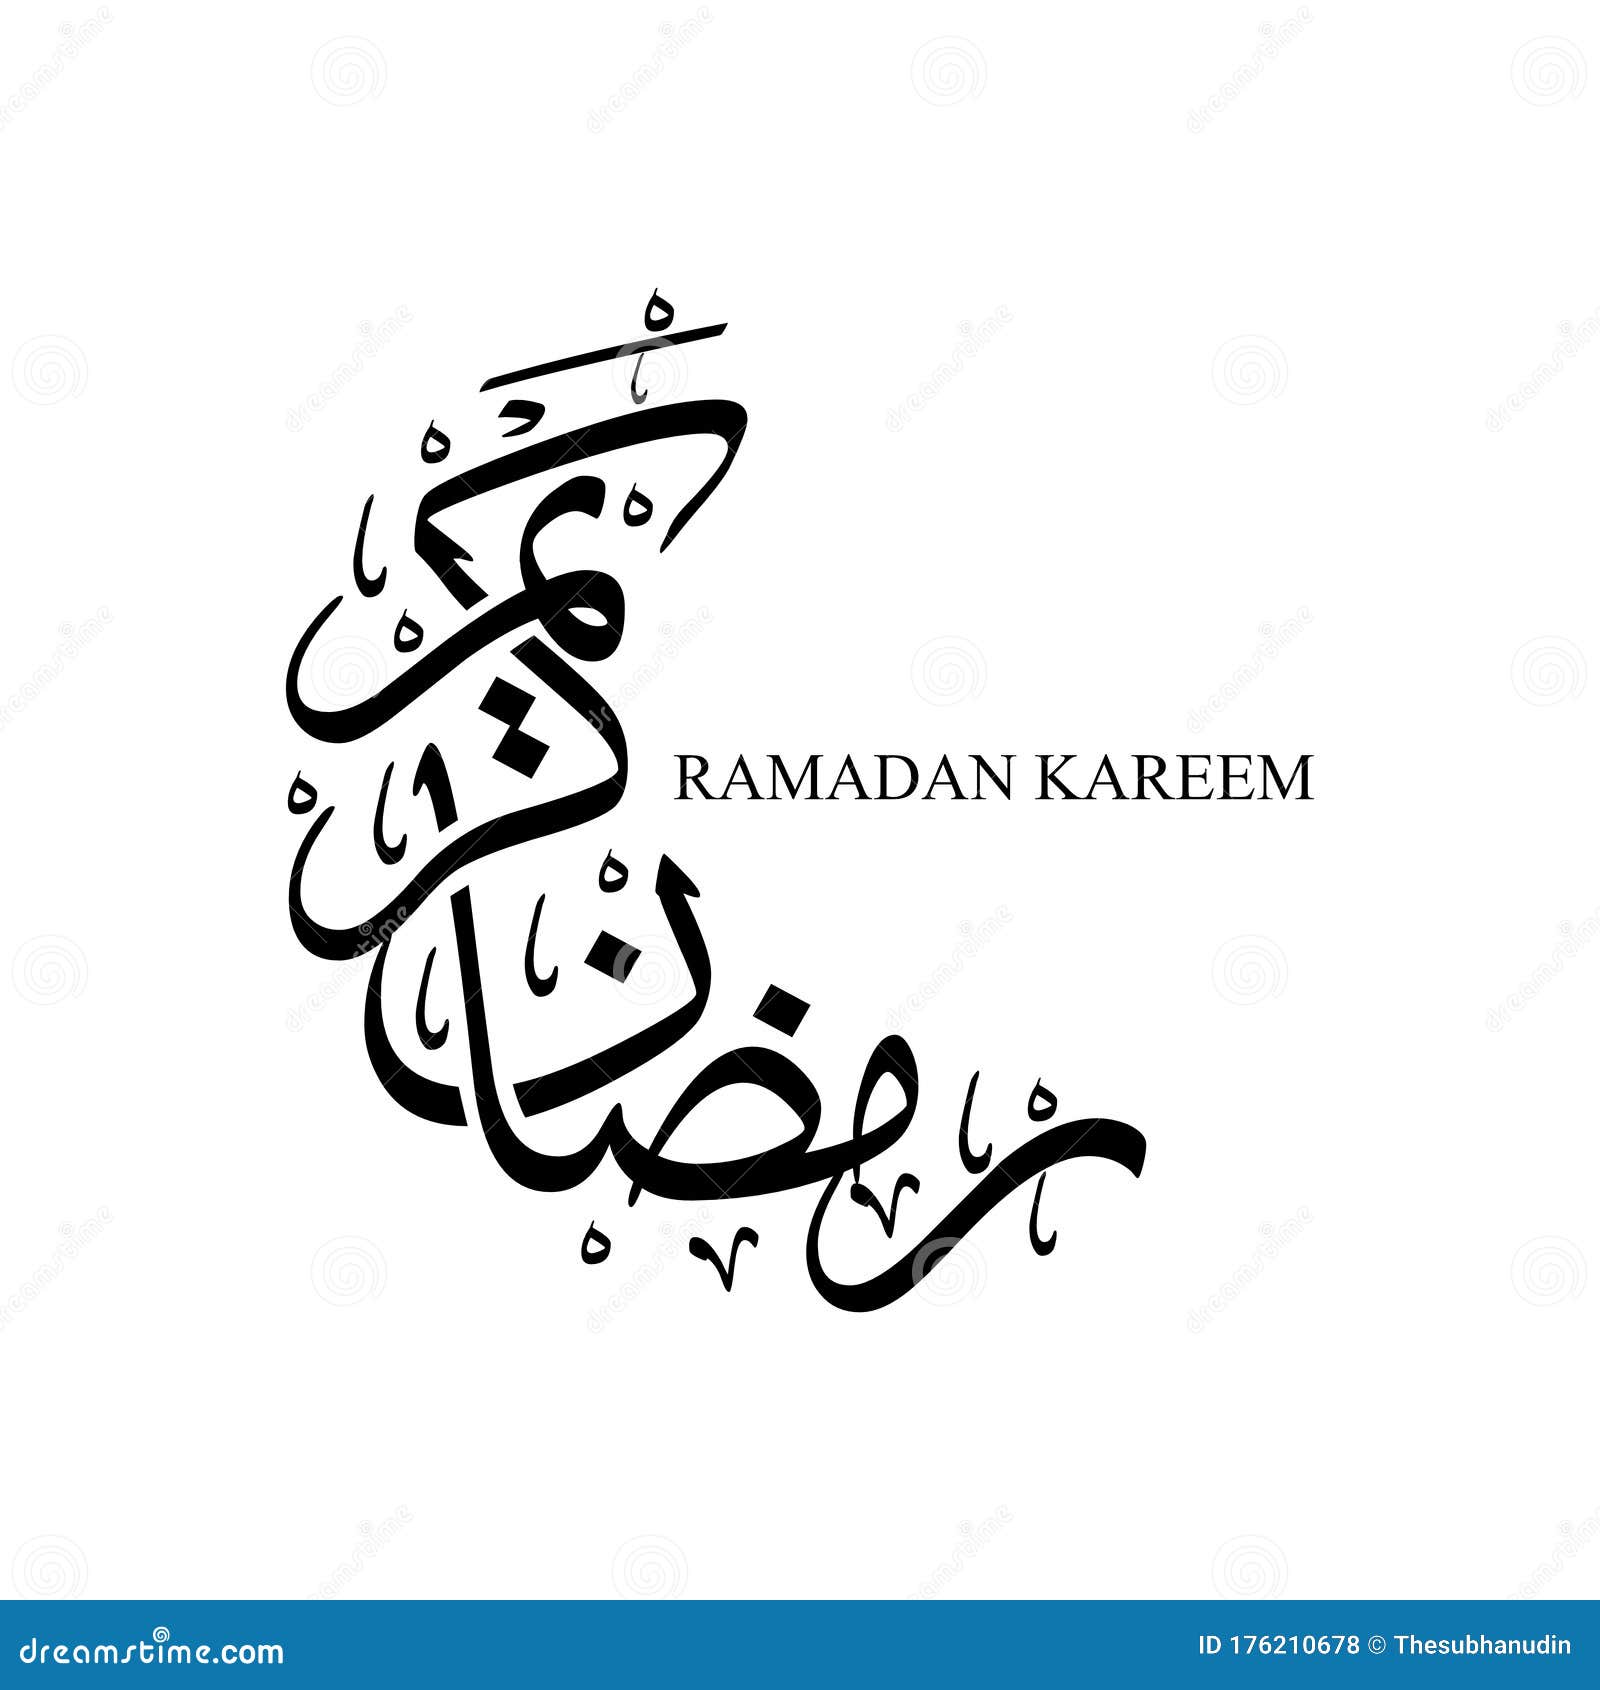 beautiful ramadan kareem calligraphy  text